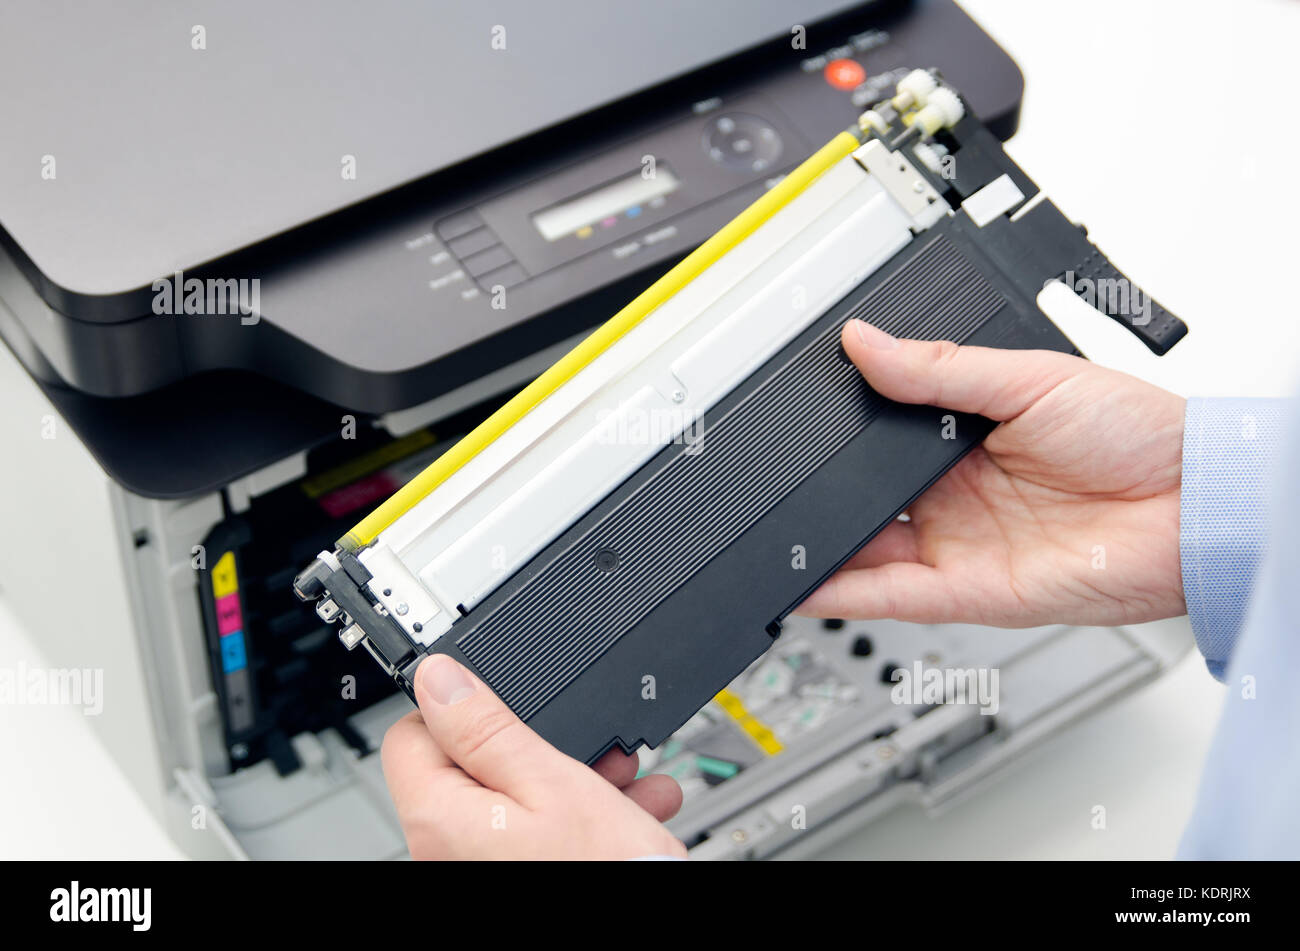 Mann ersetzt Toner für Laserdrucker Toner Drucker patrone Drucken Laser  Bürobedarf refill Konzept Stockfotografie - Alamy